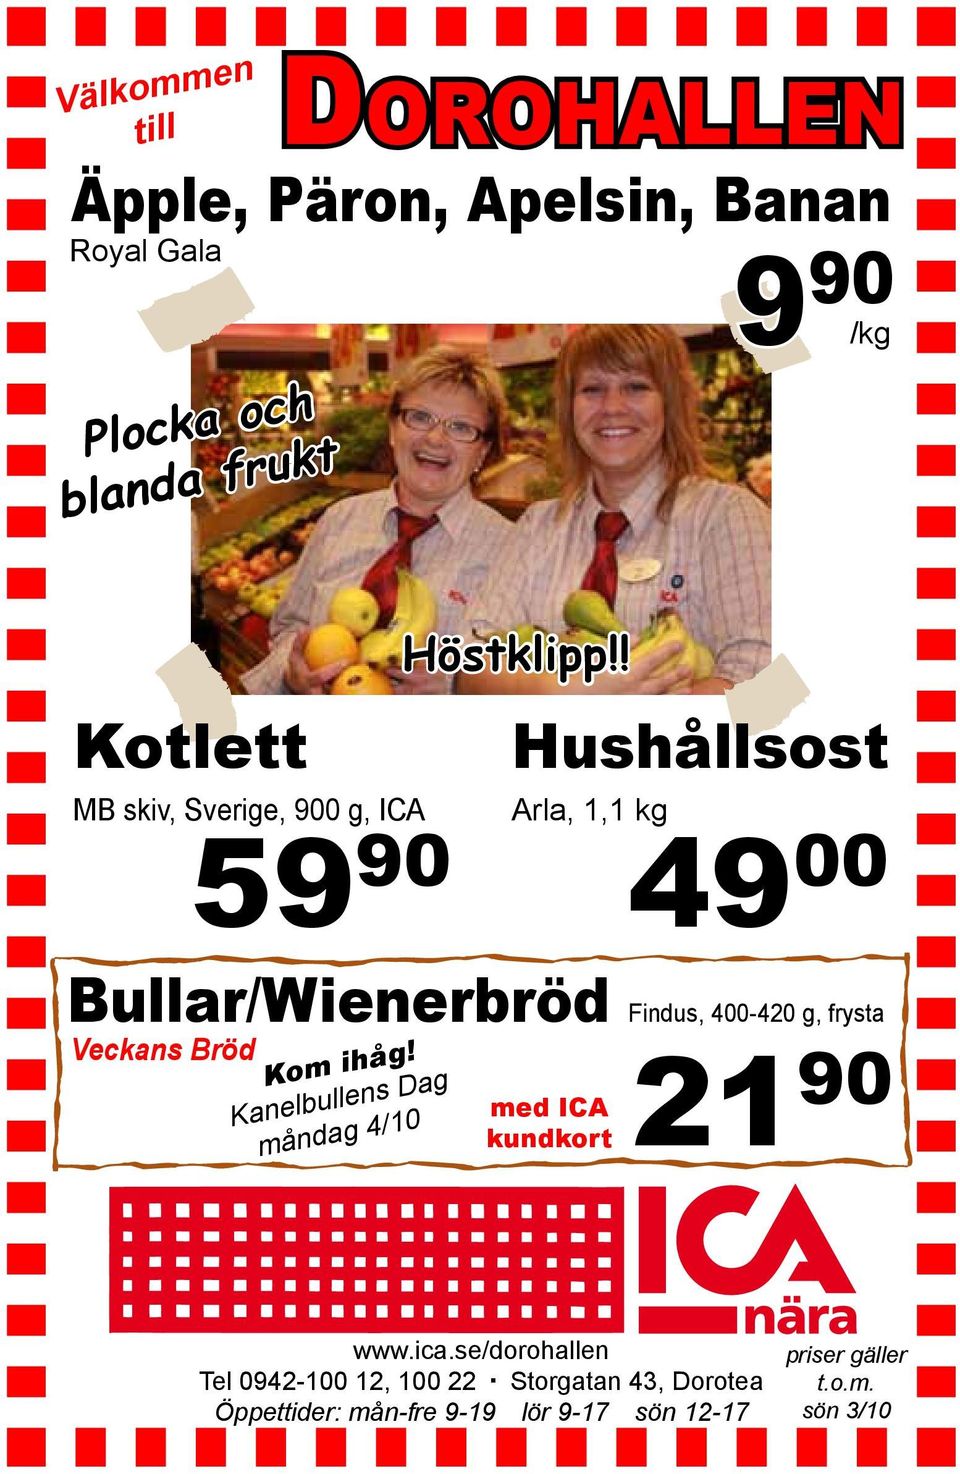 Kanelbullens Dag måndag 4/10 Höstklipp!! Hushållsost Arla, 1,1 kg 49 00 med ICA kundkort 21 90 www.ica.